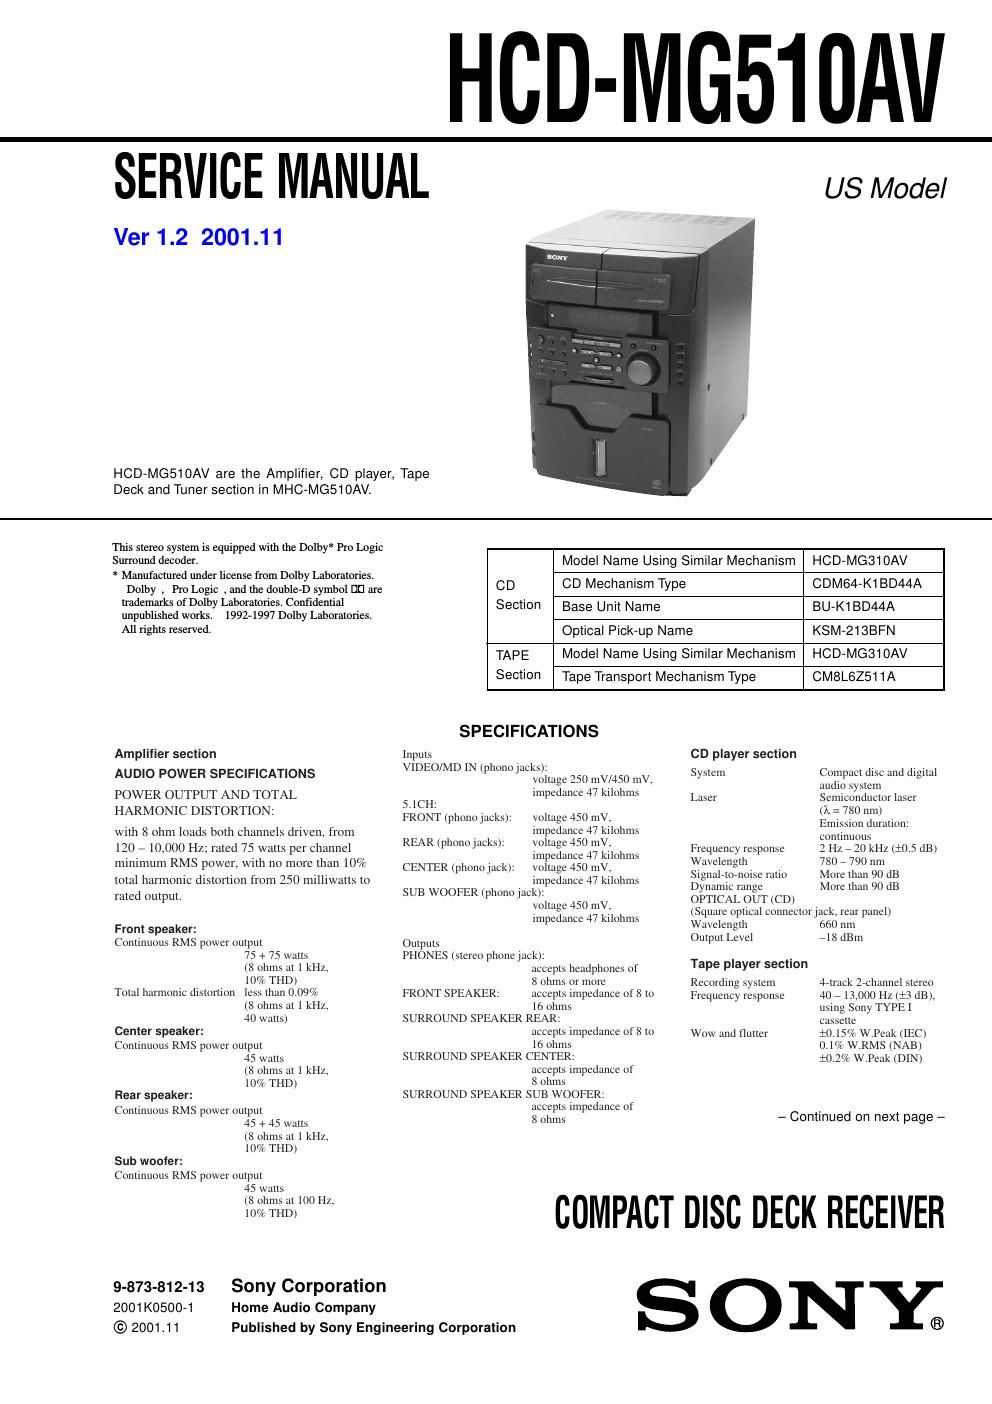 sony hcd mg 510 av service manual